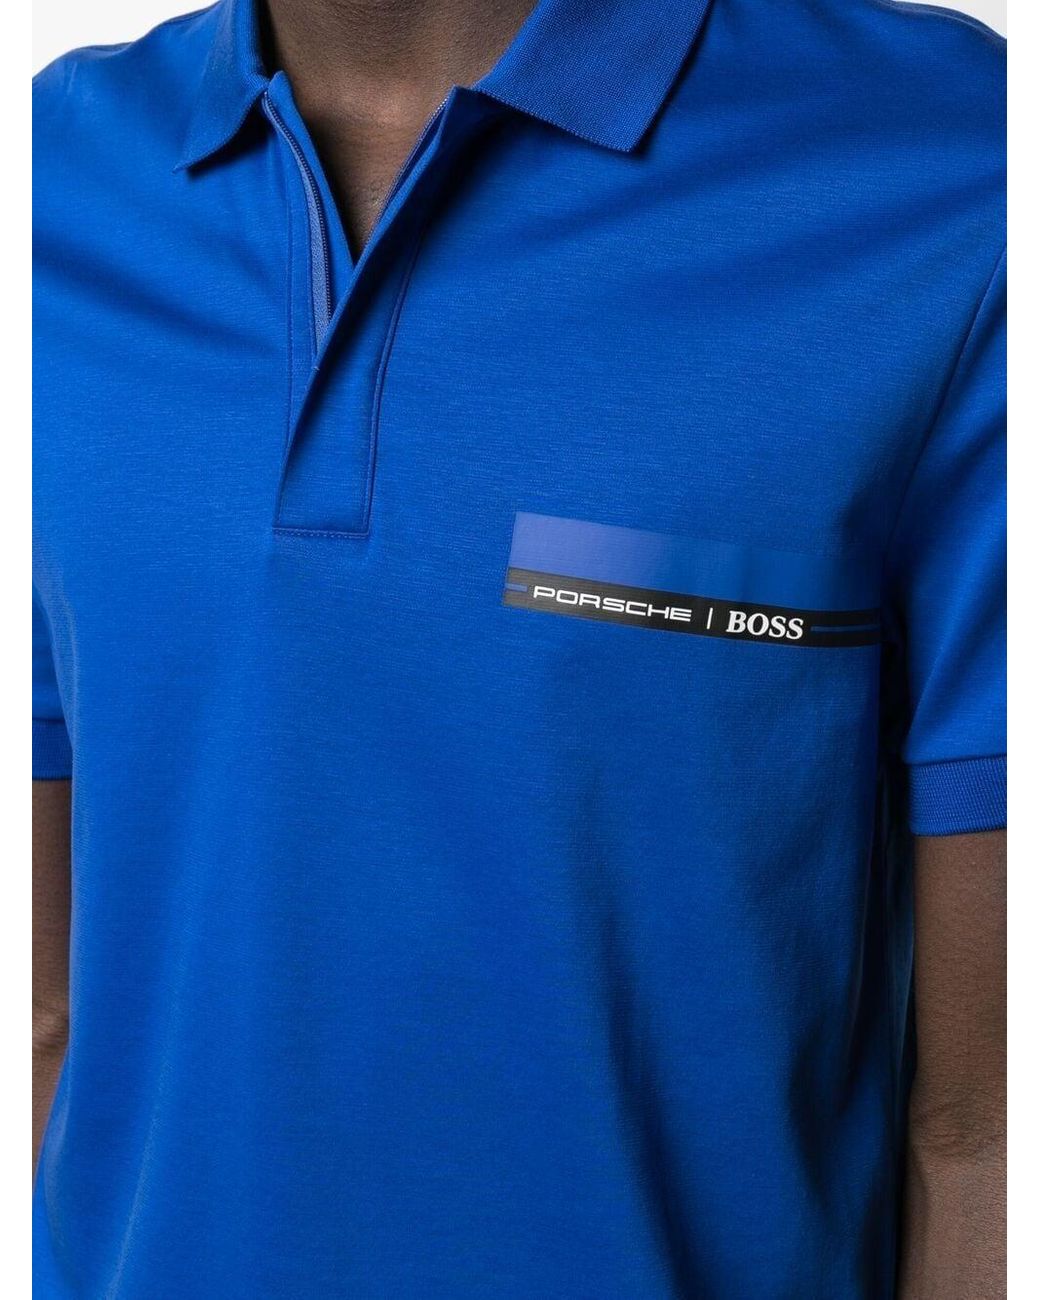 BOSS by HUGO BOSS X Porsche Logo-print Polo Shirt in Blue for Men | Lyst